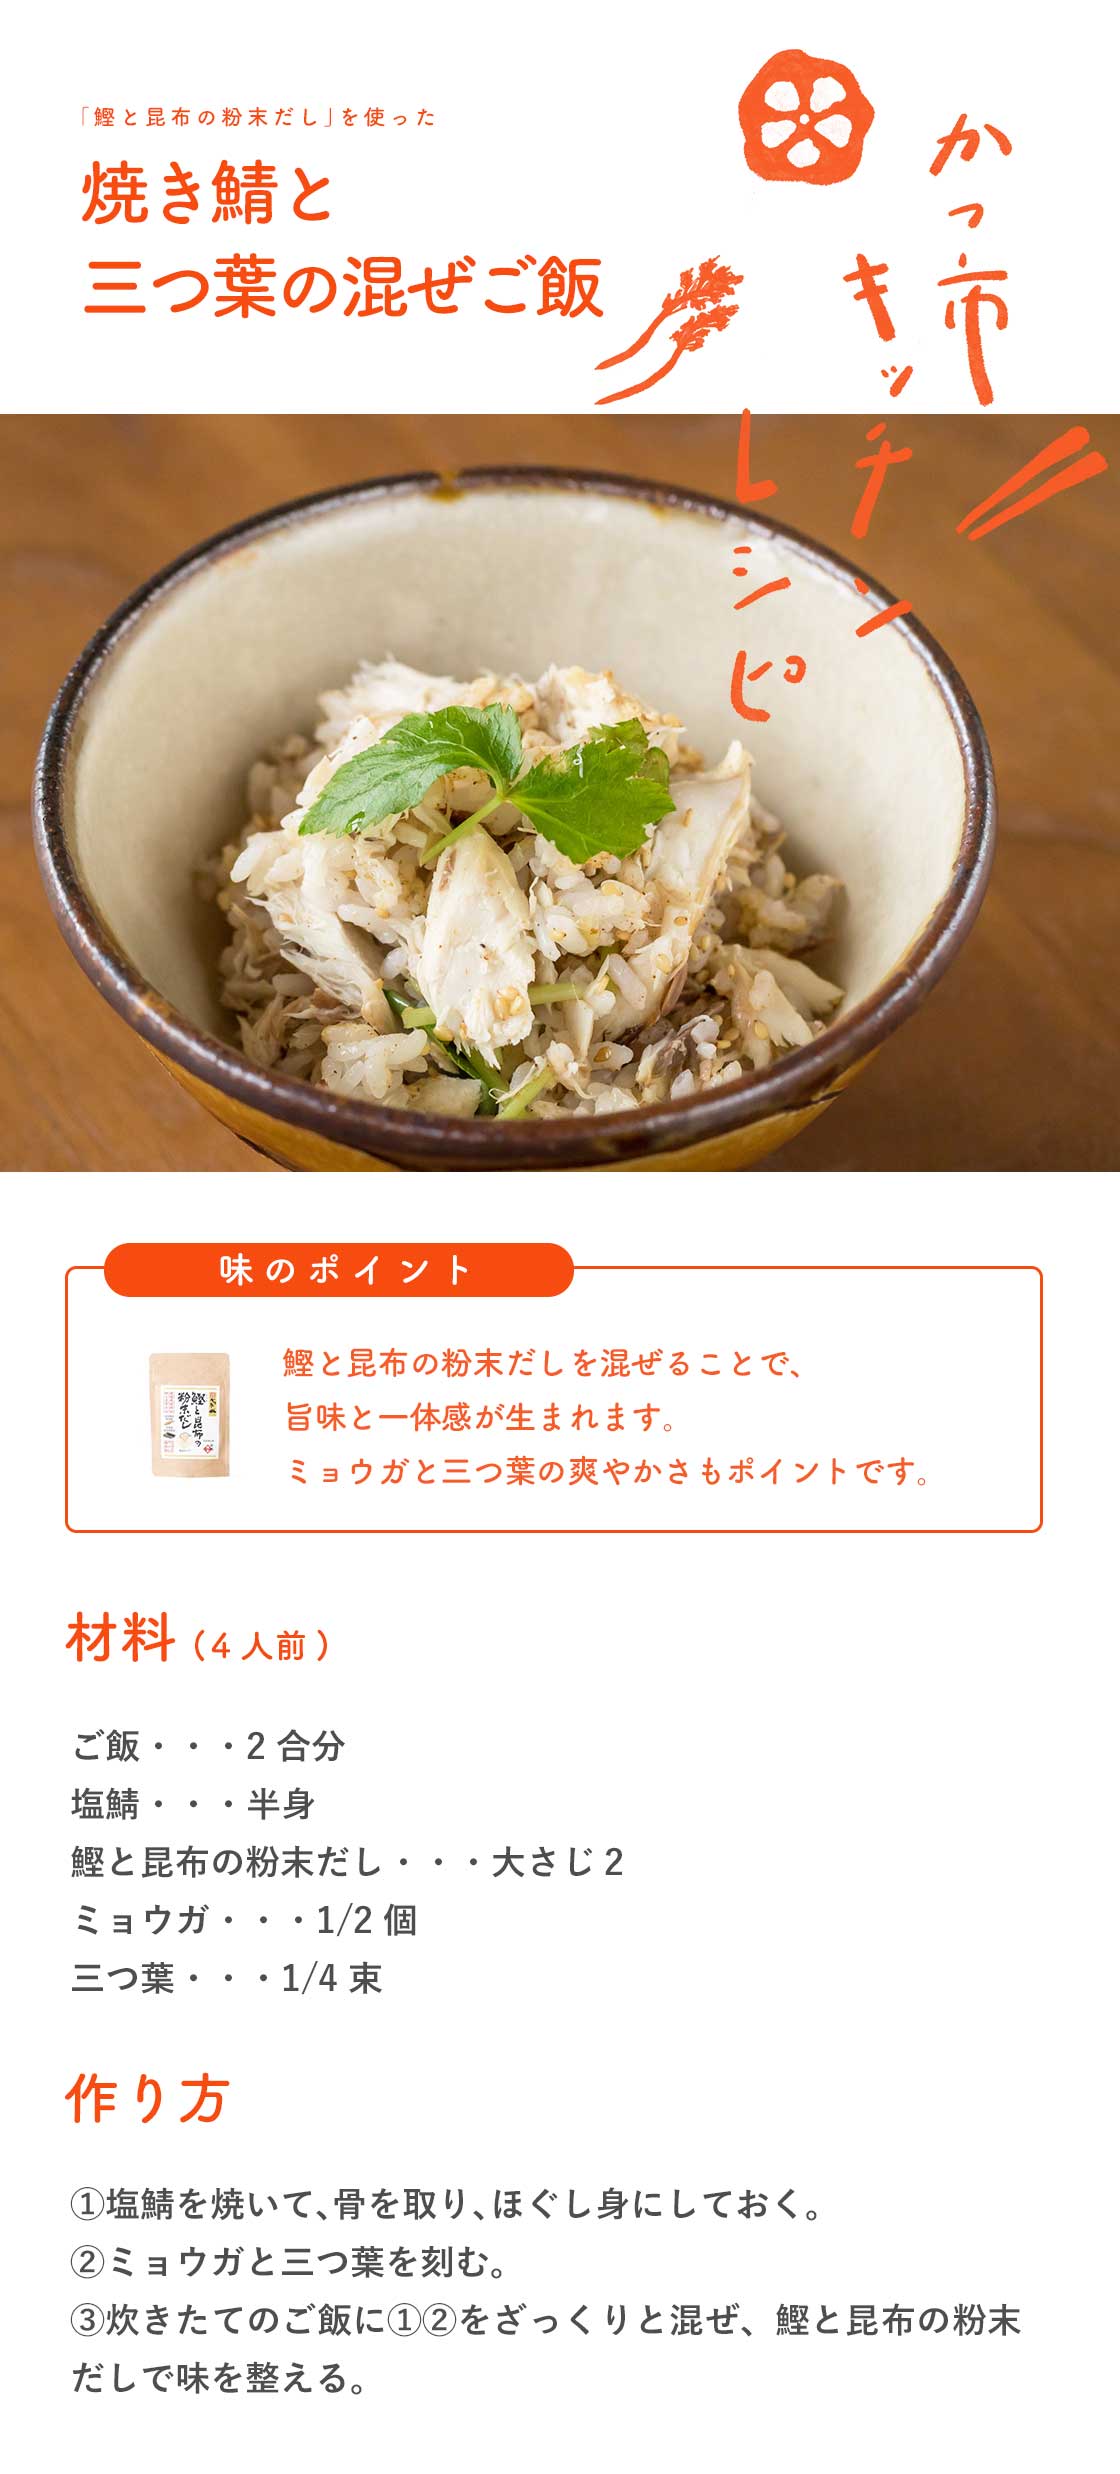 焼き鯖と三つ葉の混ぜご飯のレシピ